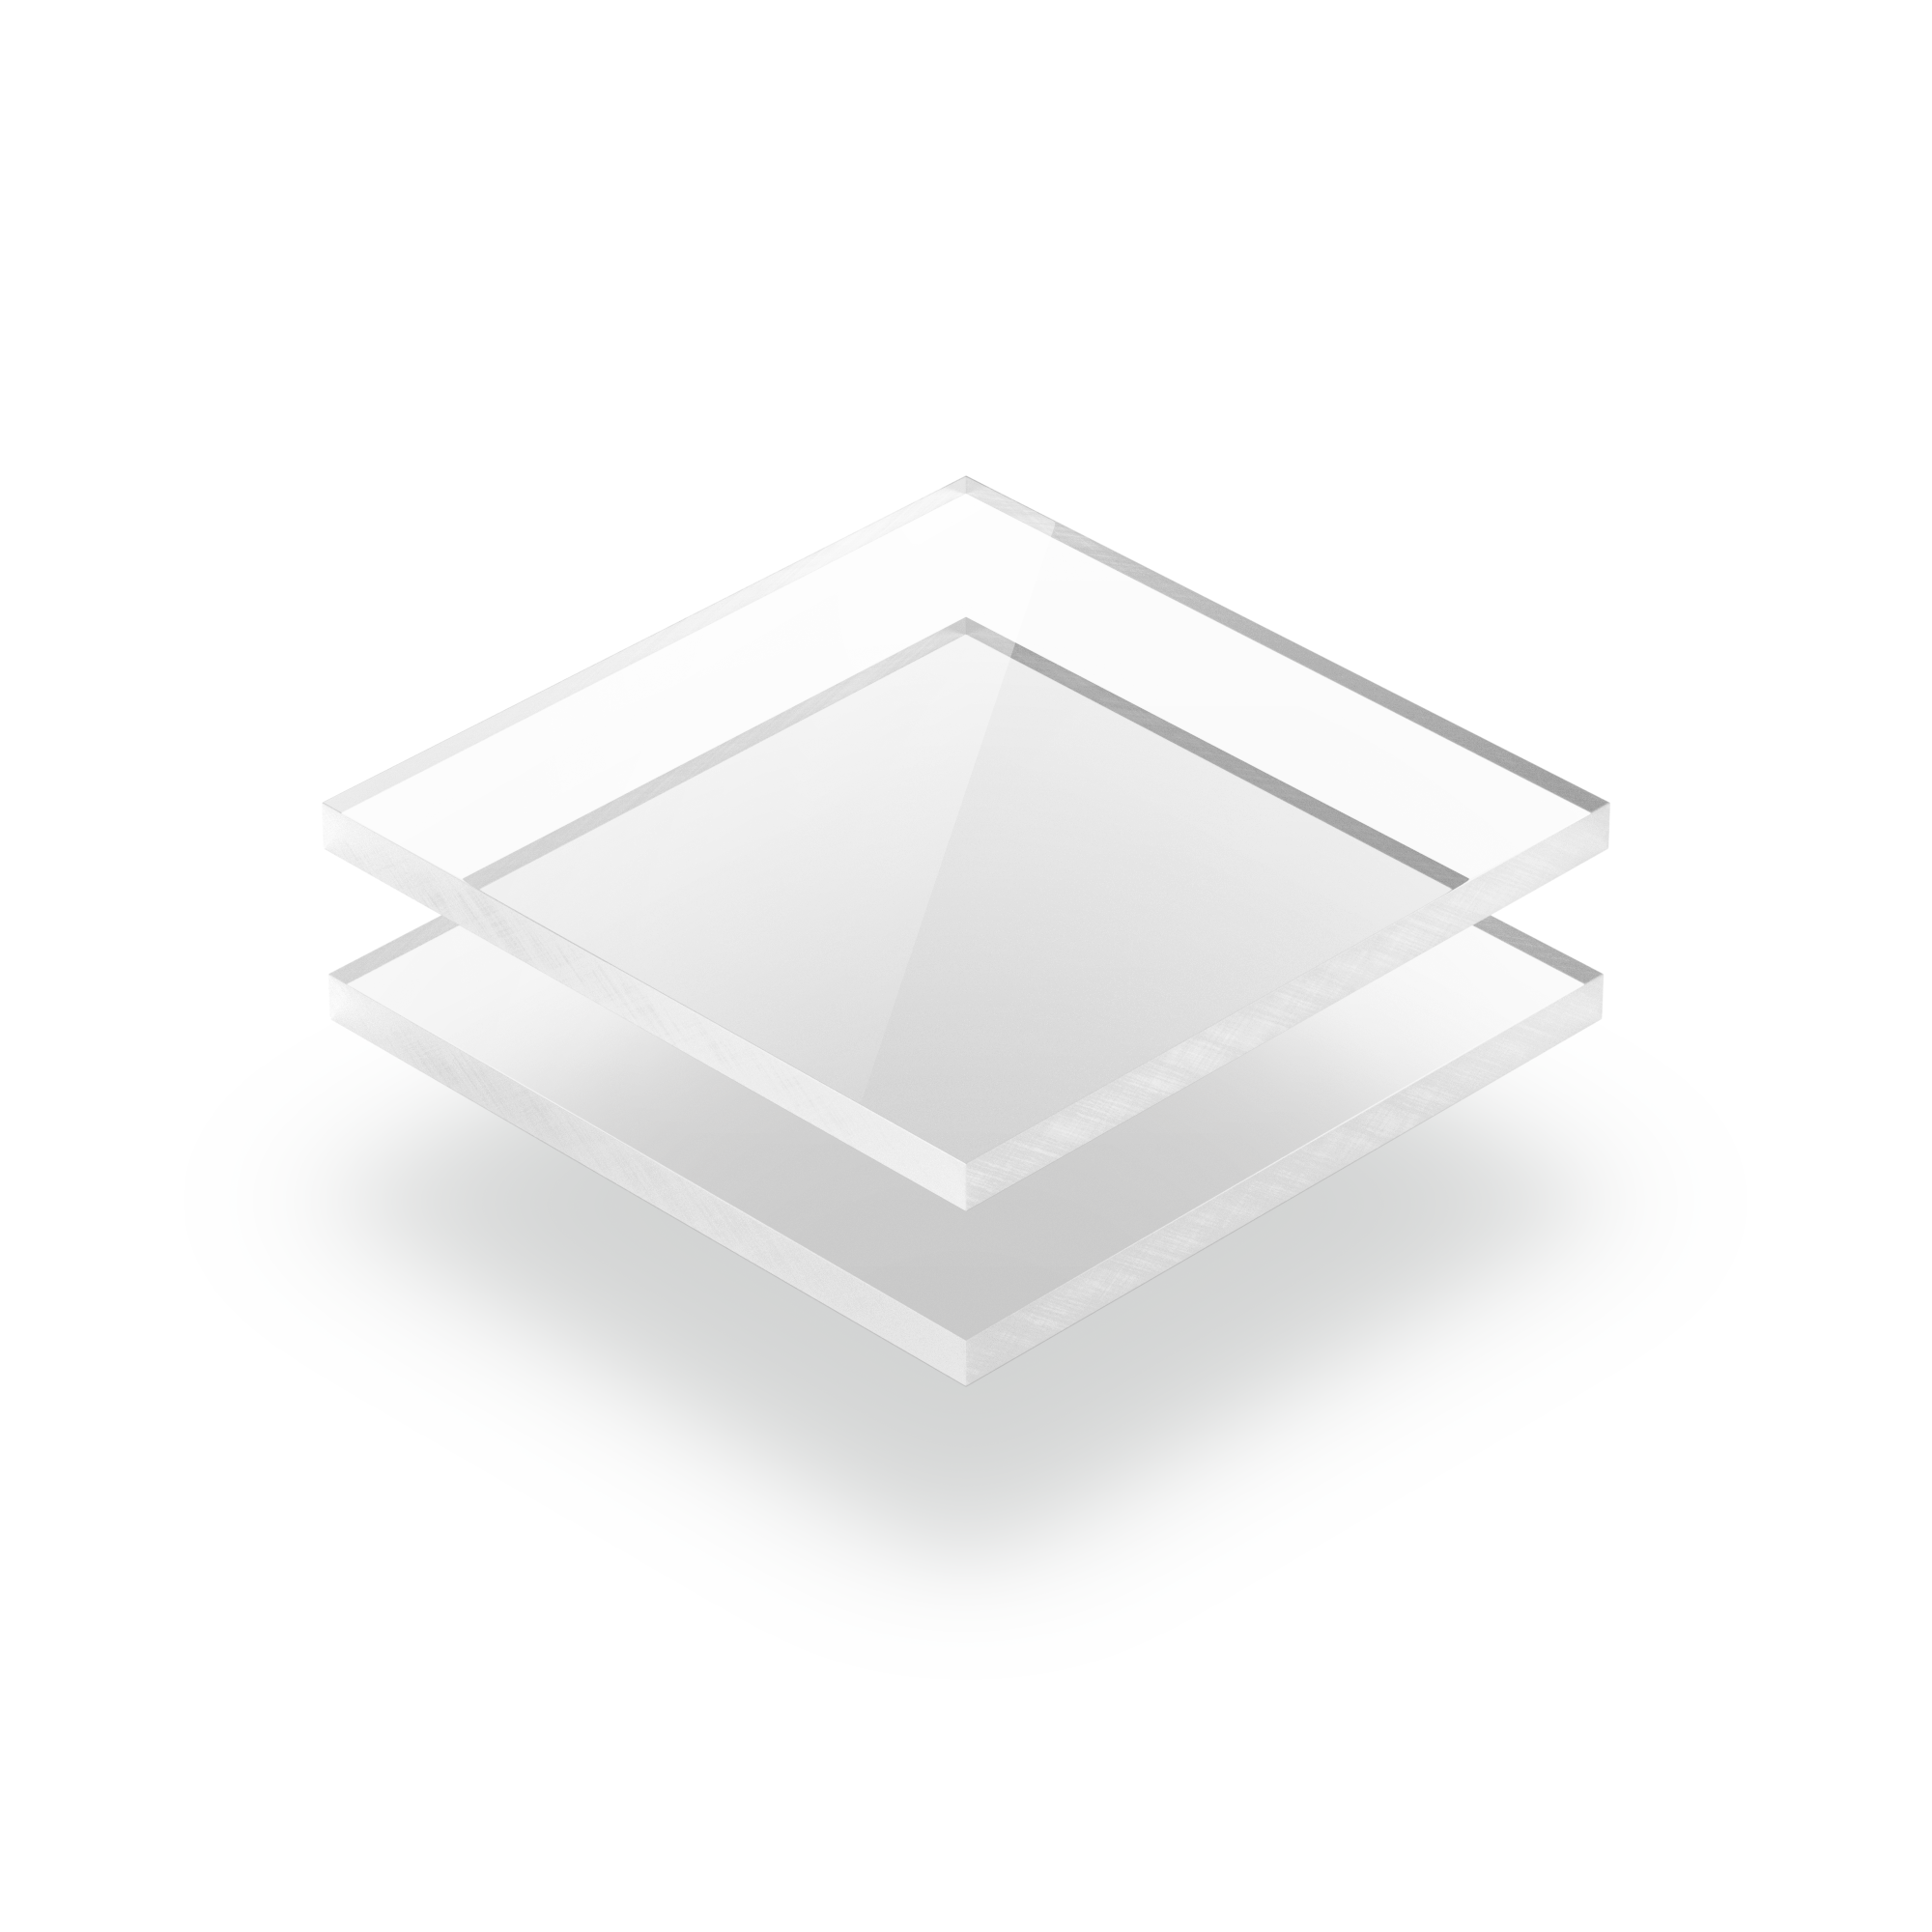 Aucune colle requise Acrylique transparent en plastique transparent 25mm x10 